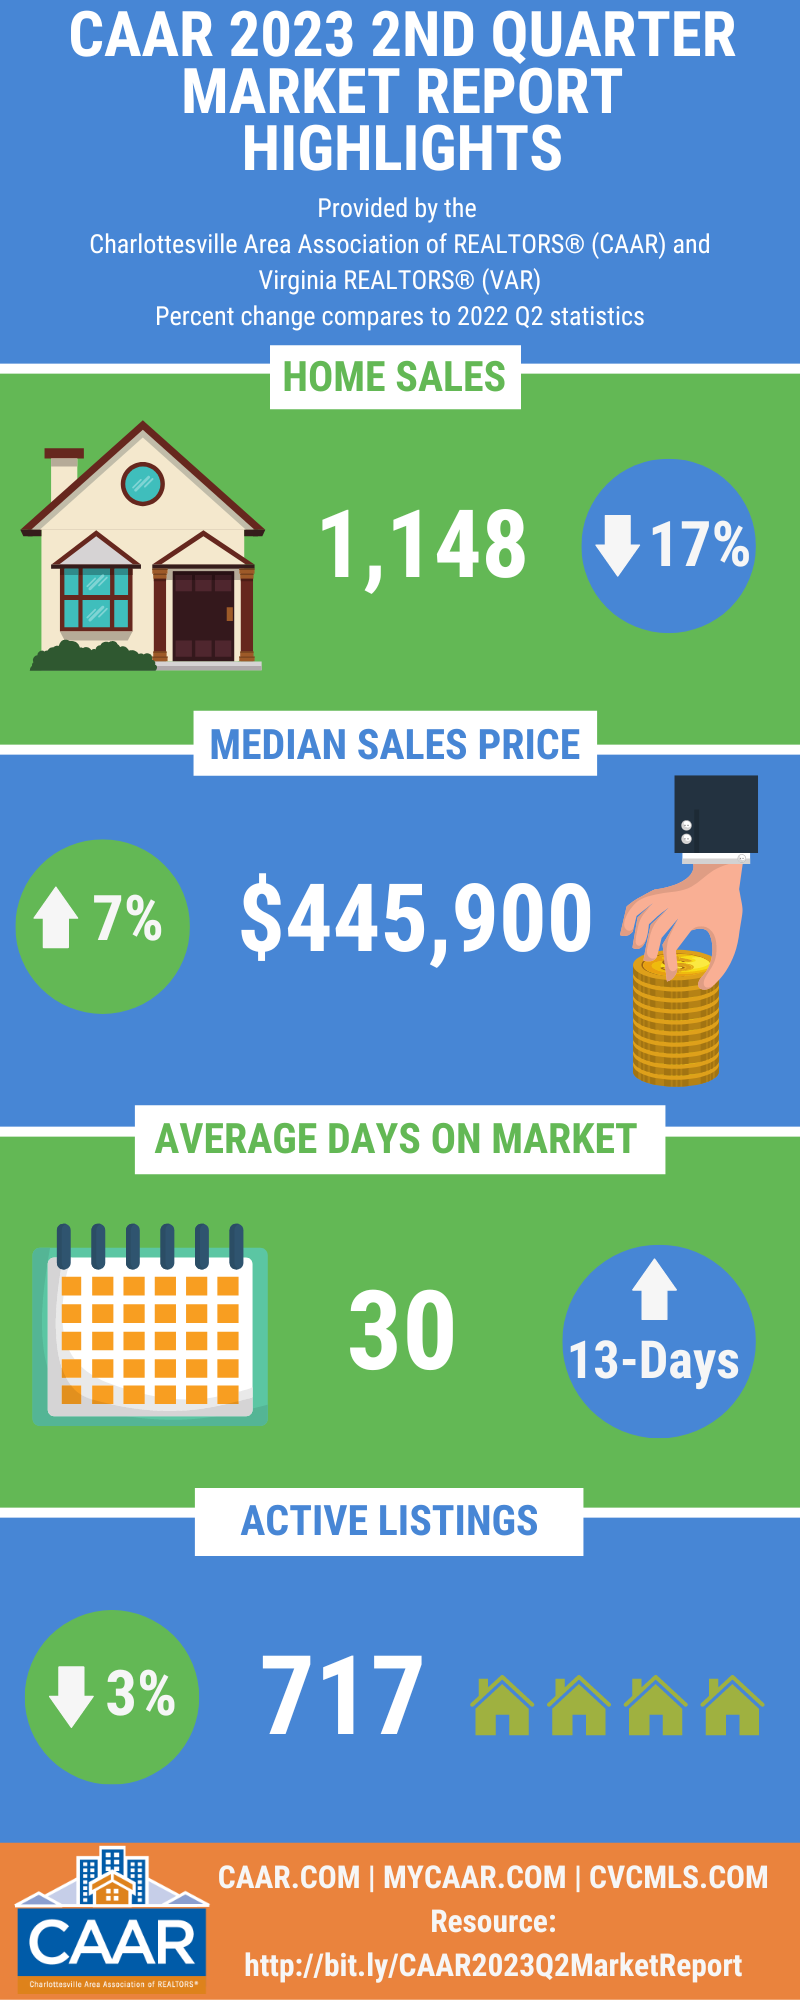 CAAR 2023 Q2 Market Report Infographic